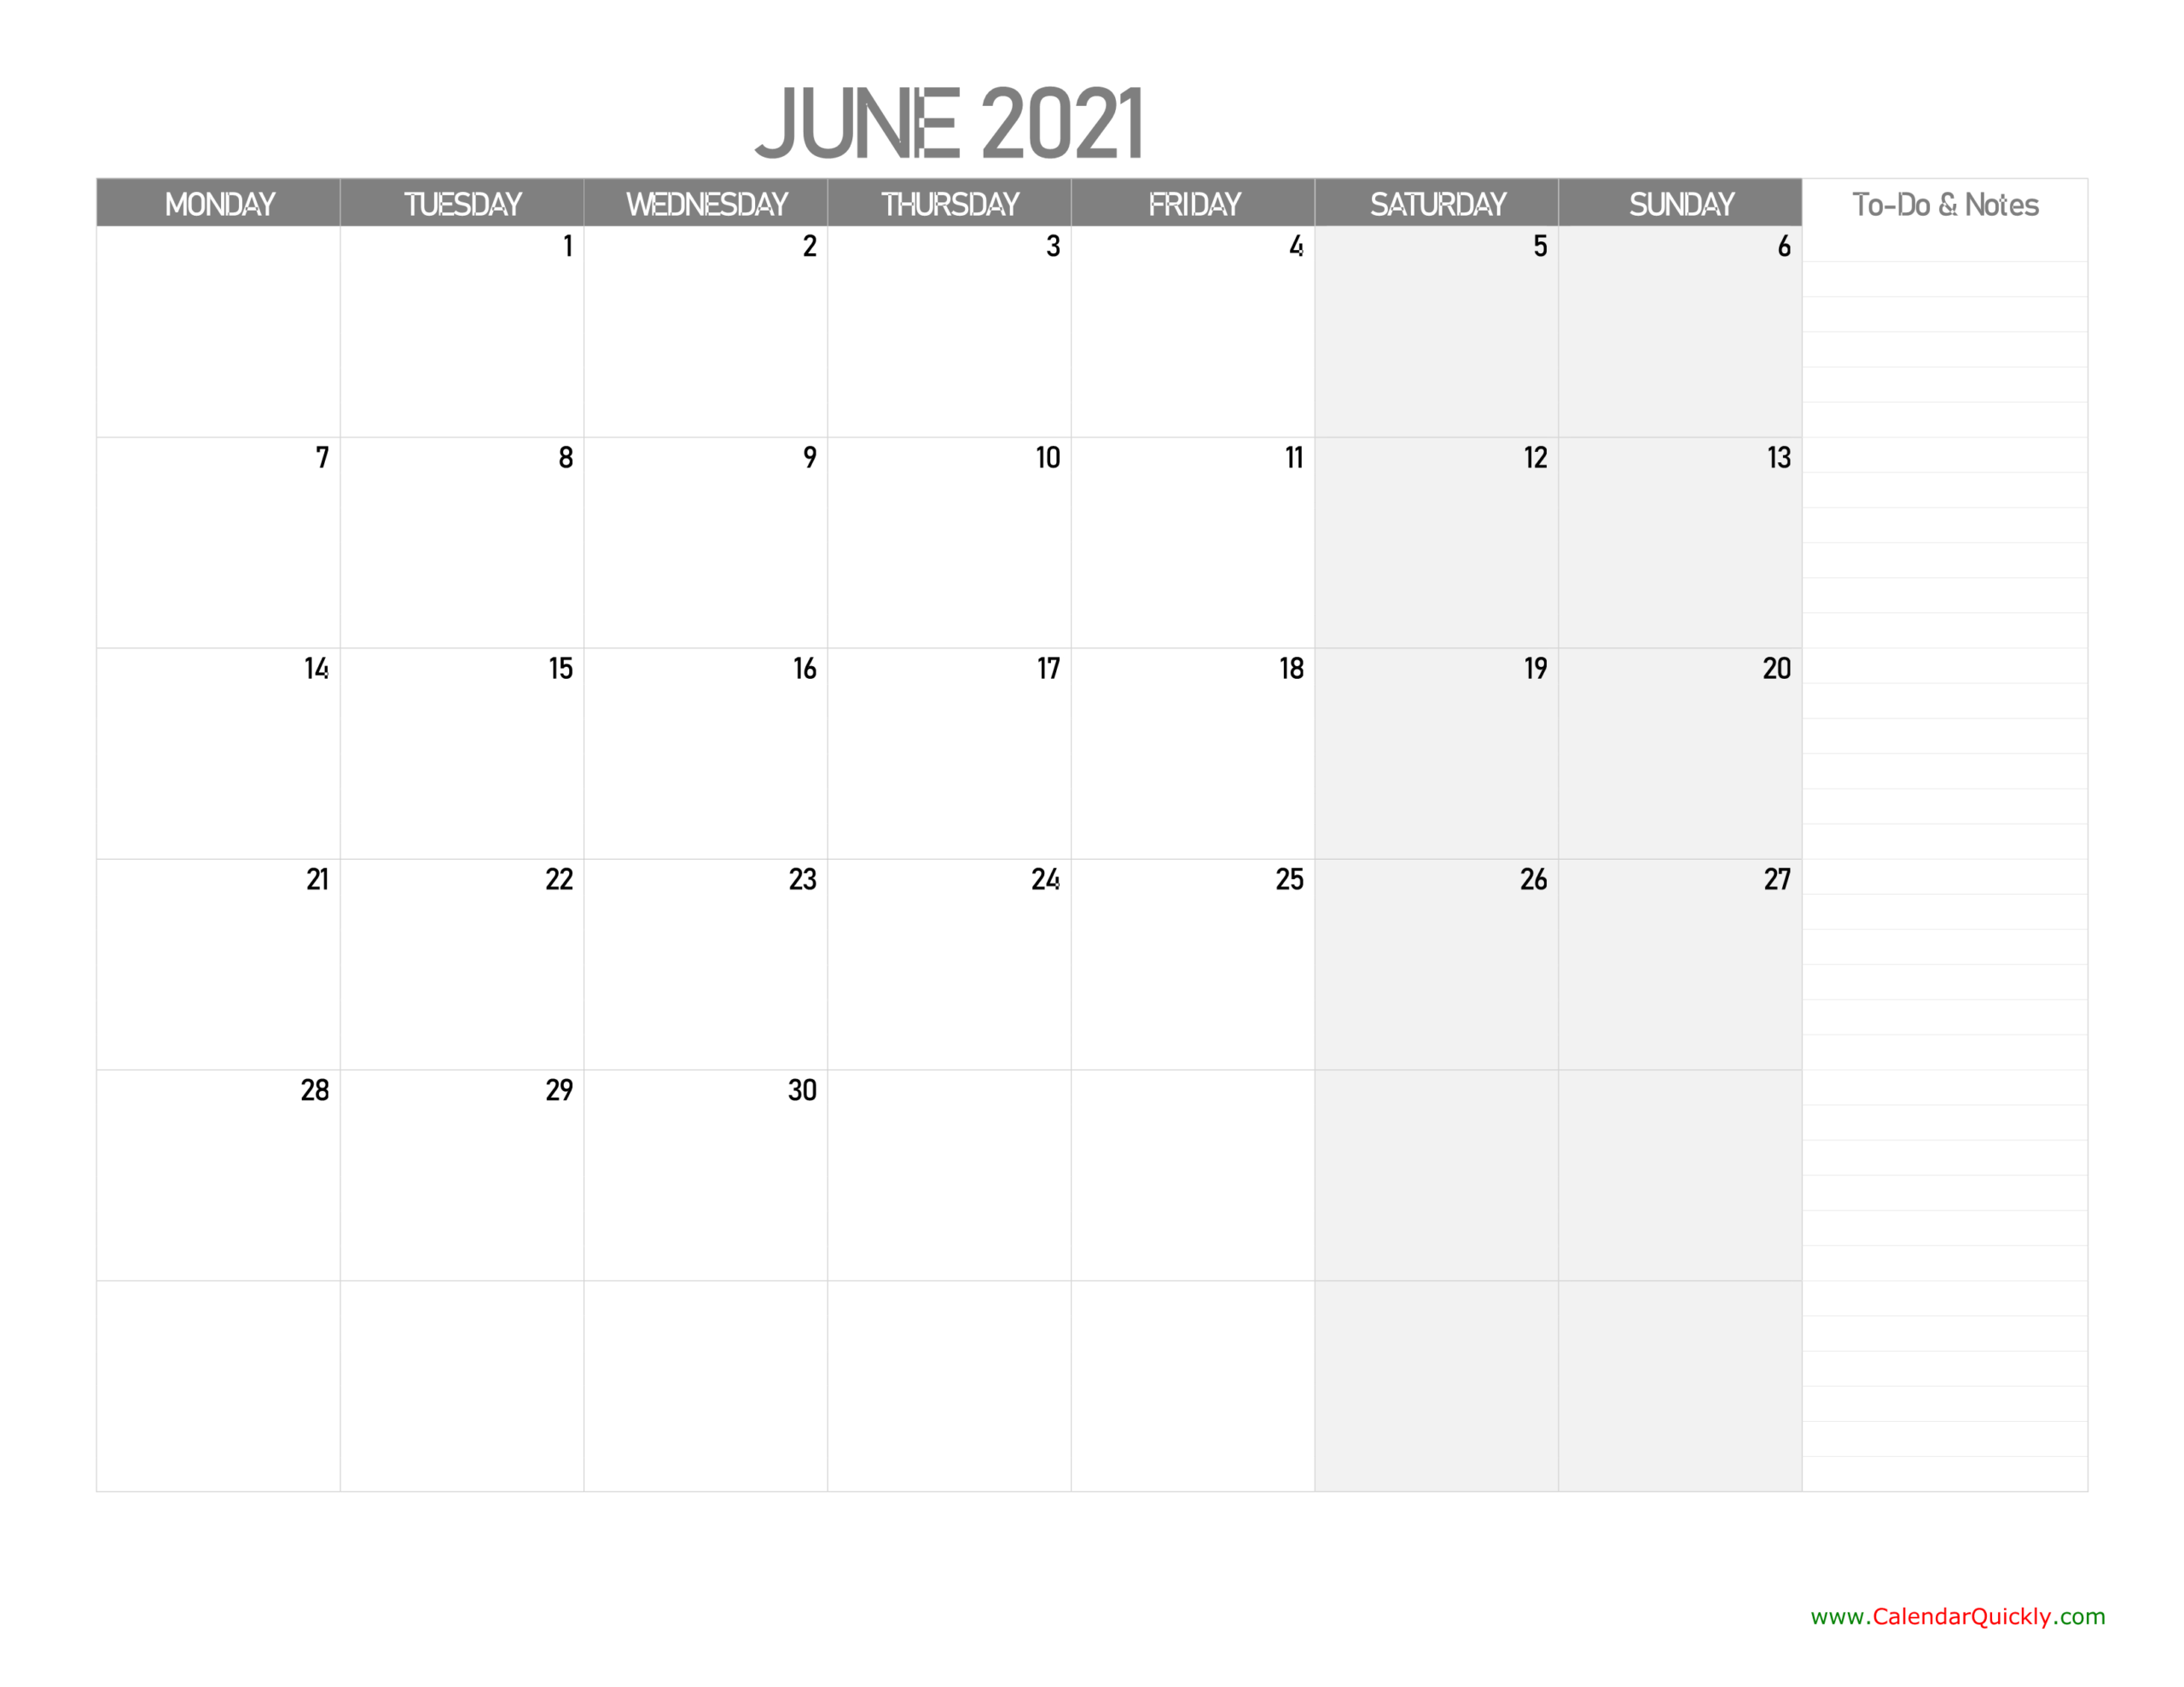 June Monday Calendar 2021 With Notes | Calendar Quickly-Printable Calendar Starting Monday 2021